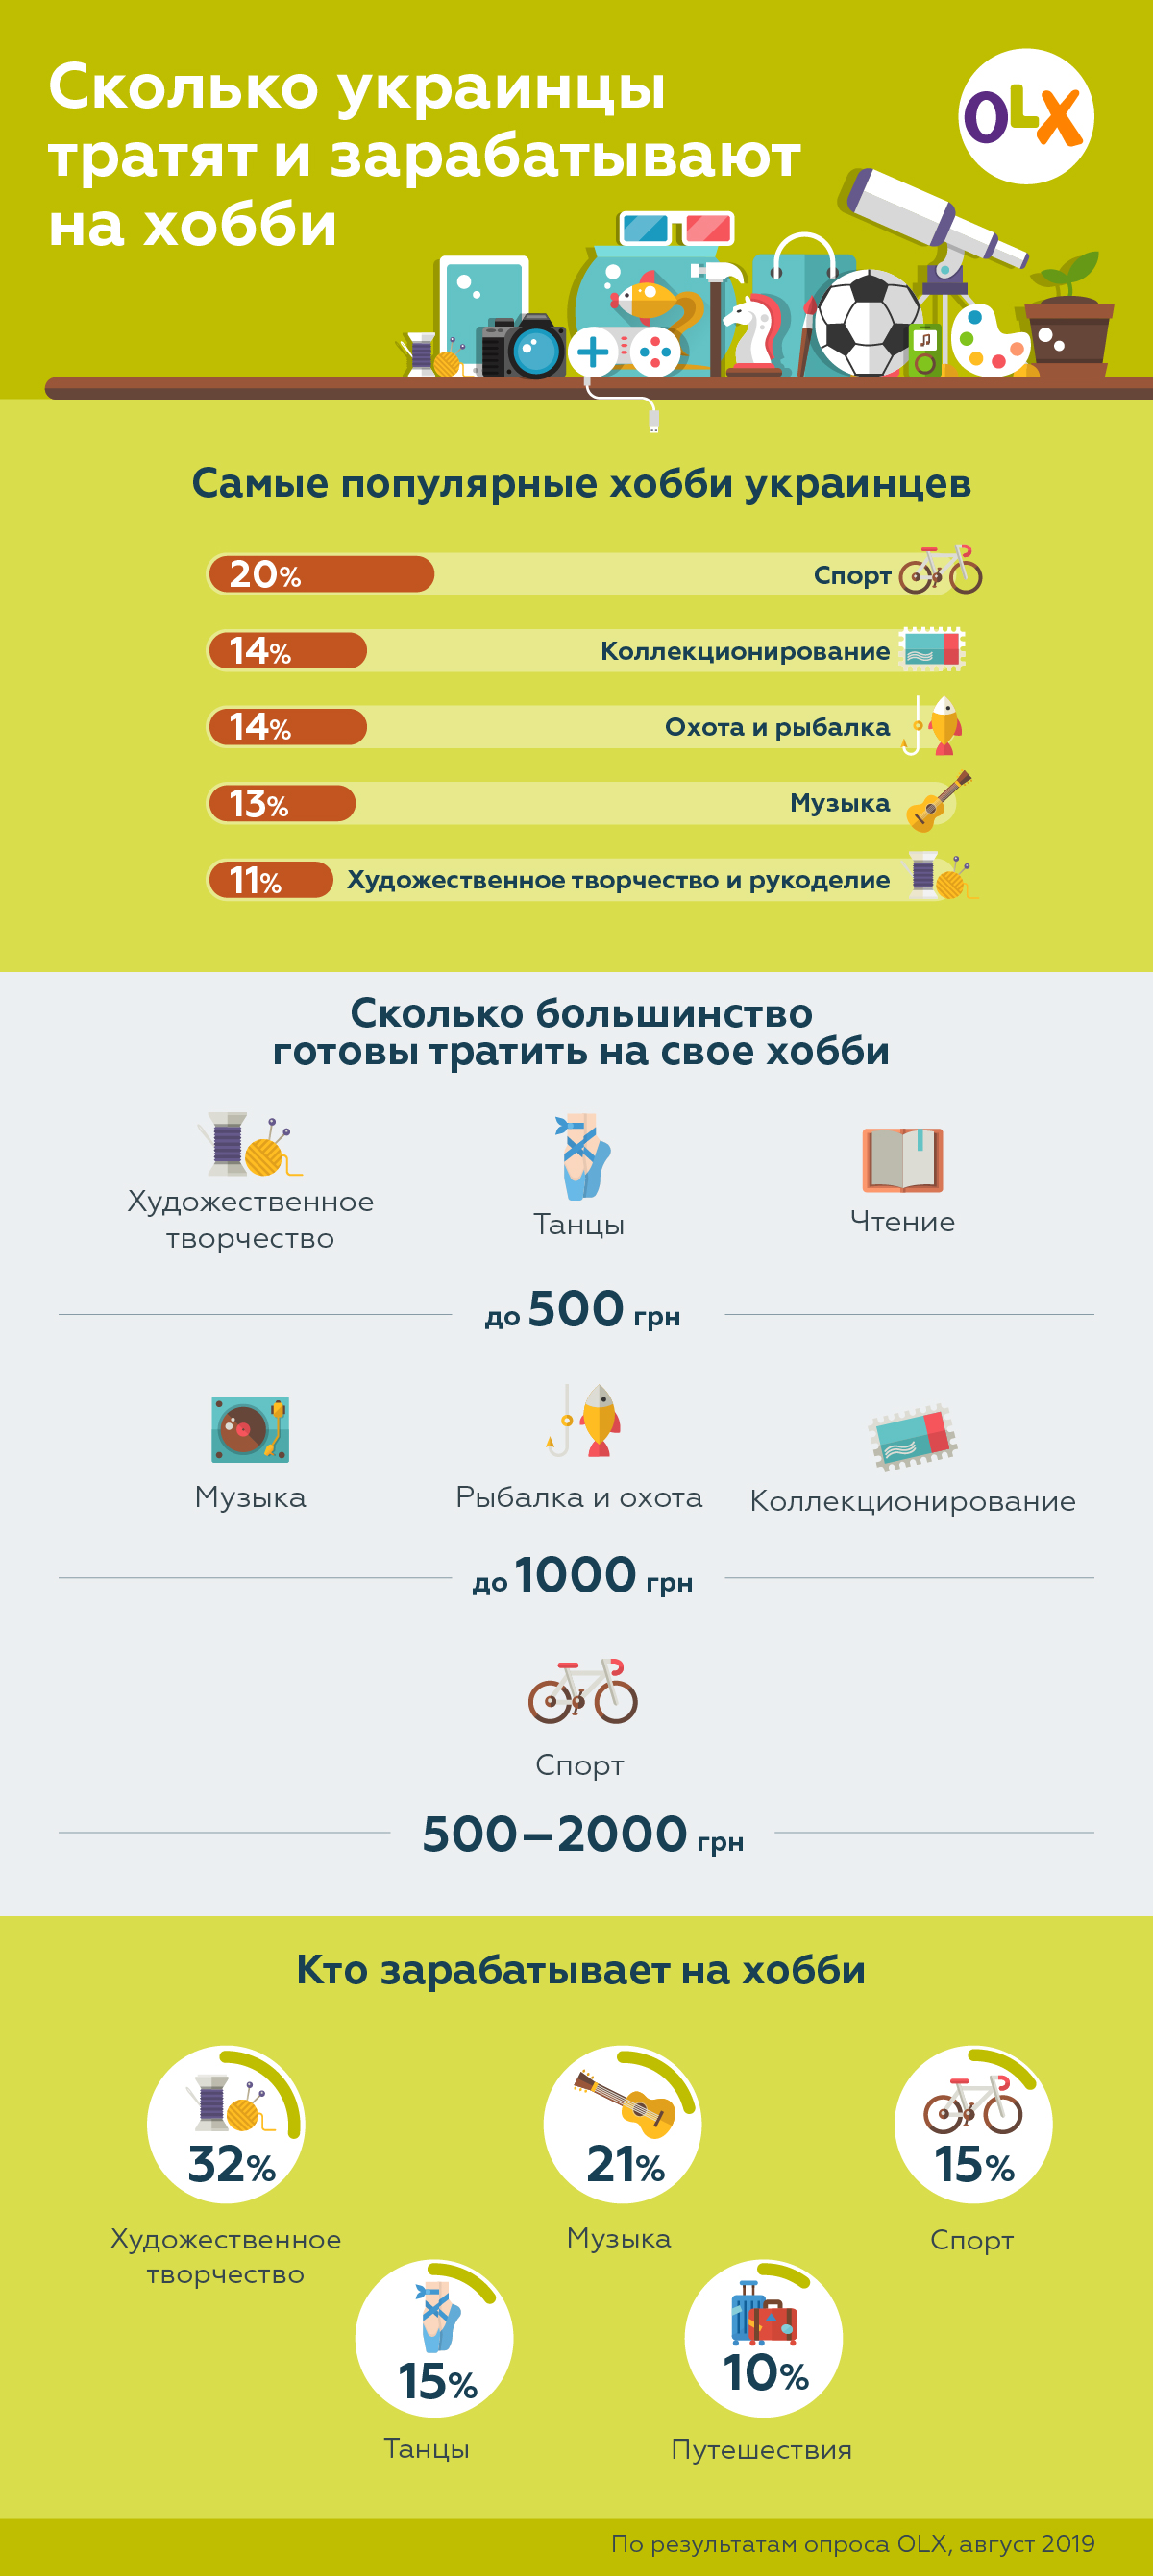 OLX_Сколько тратят и зарабатывают украинцы на хобби